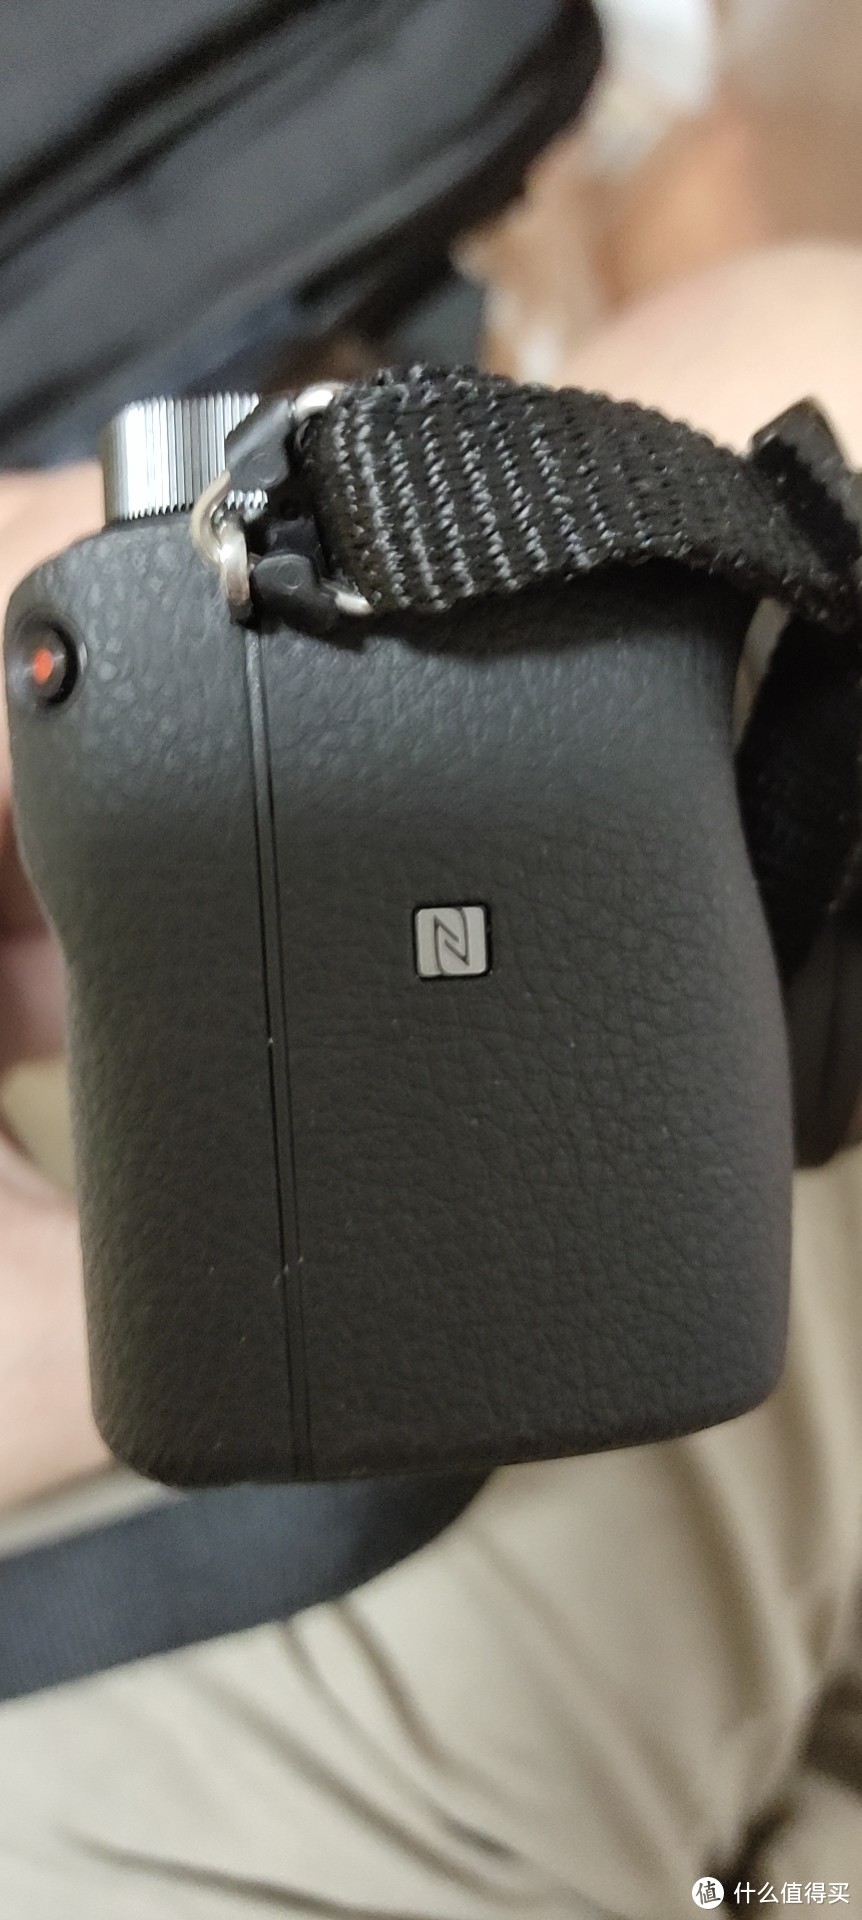 安卓机全功能的NFC很方便和支持NFC的相机耳机等设备连接